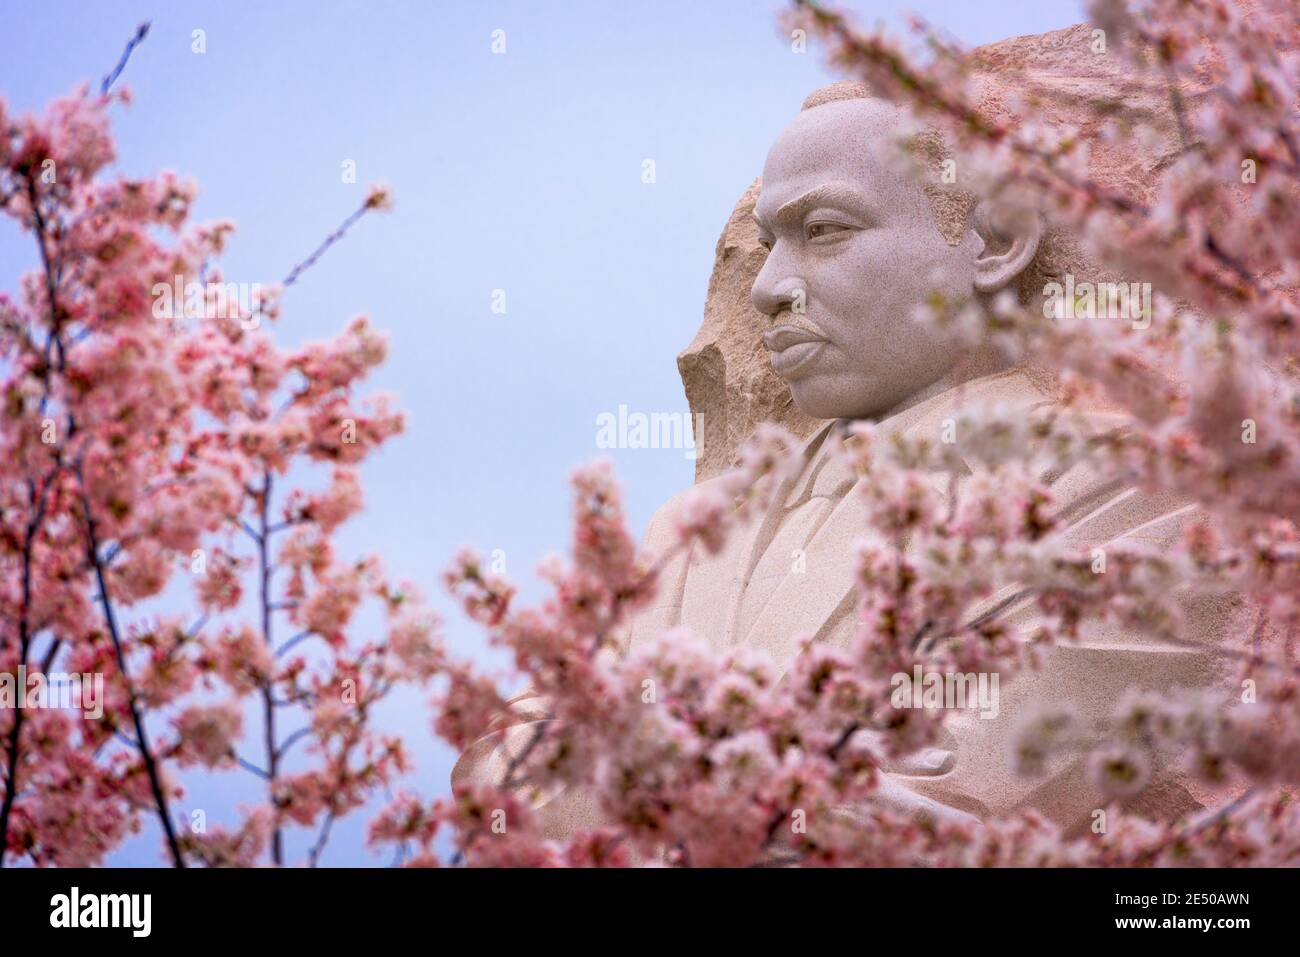 WASHINGTON - 8 AVRIL 2015 : le mémorial du leader des droits civils Martin Luther King, Jr. Pendant la saison de printemps dans le parc West Potomac. Banque D'Images